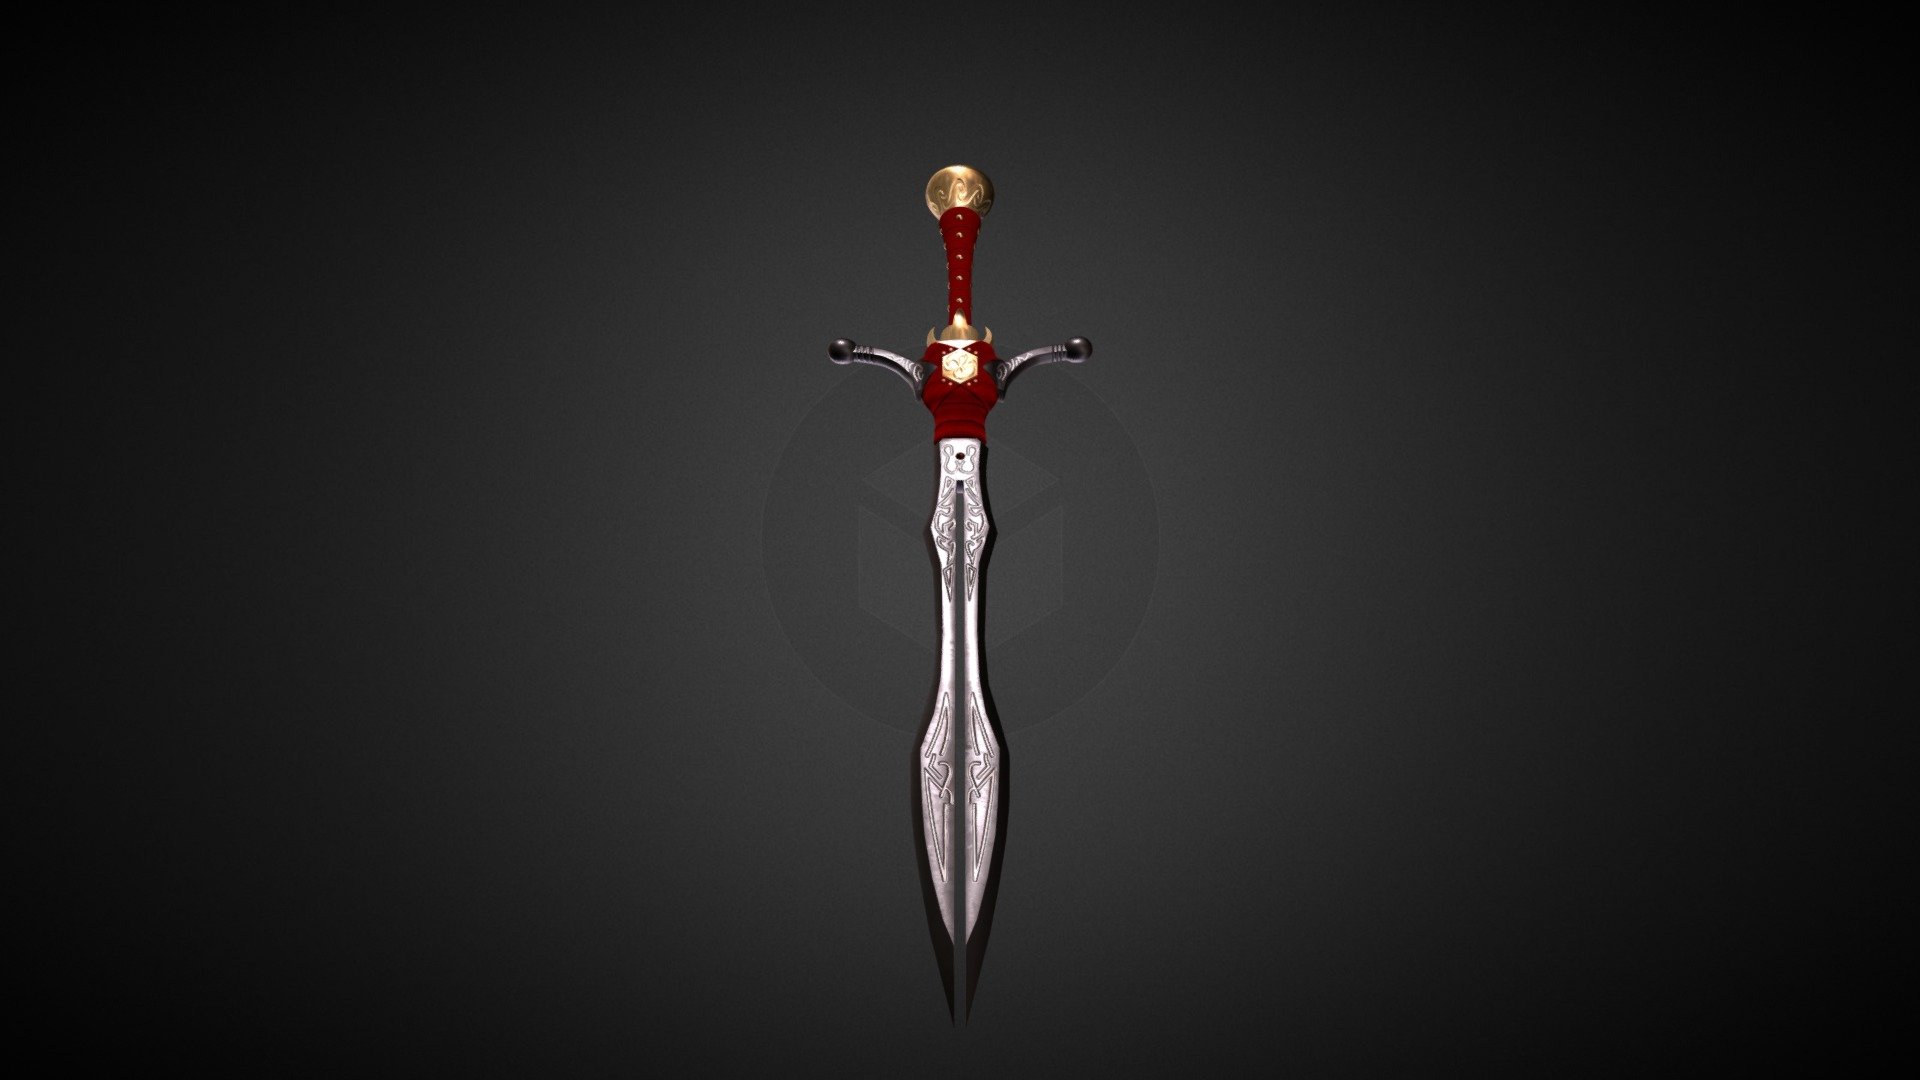 sword of eden - 3D model by lsworks (@lsworks) [16d9457]